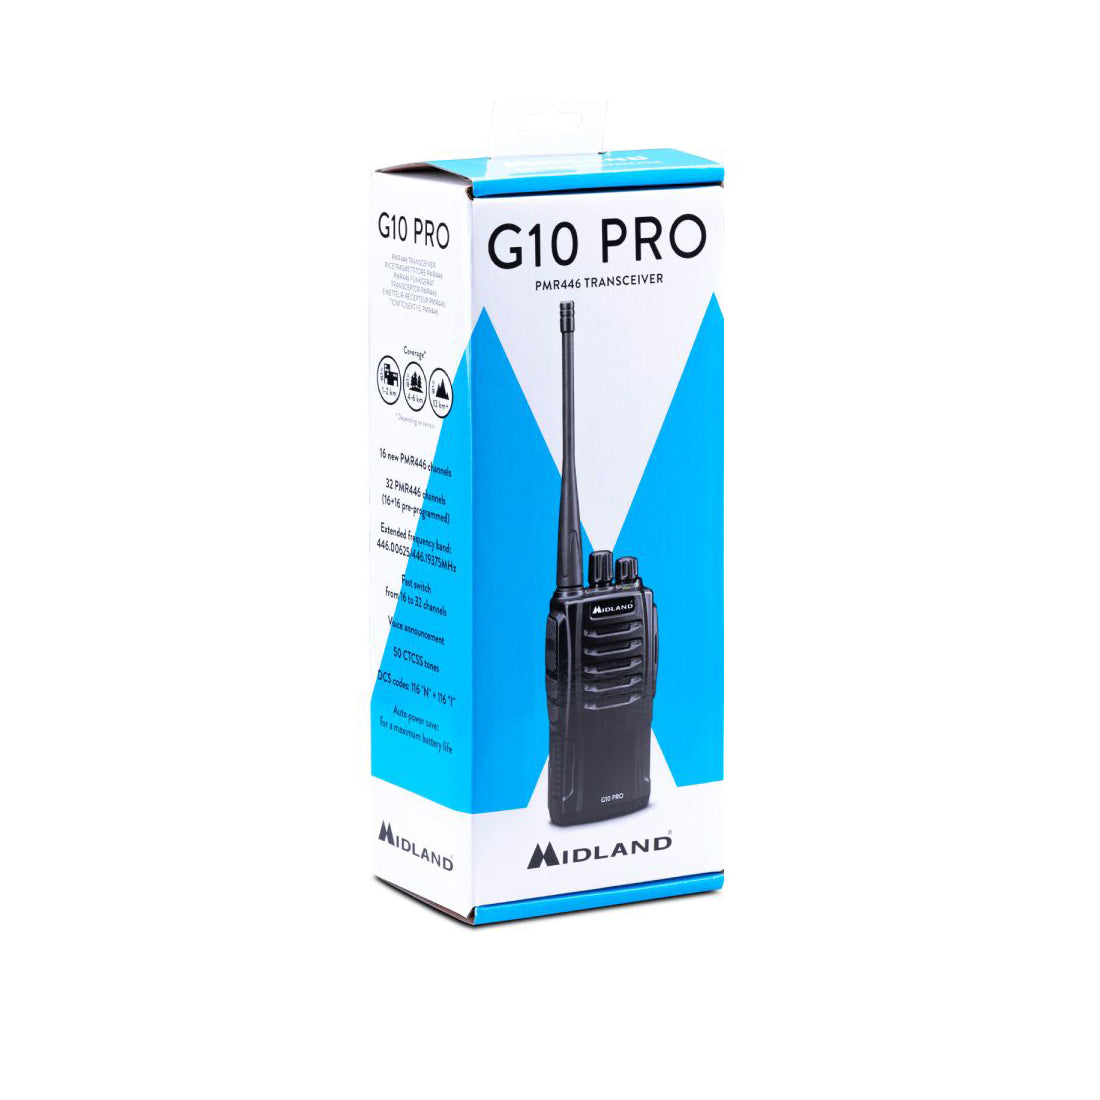 Midland G10 Pro Ricetrasmettitore portatile, radio ricetrasmittente semi professionale, 32 canali